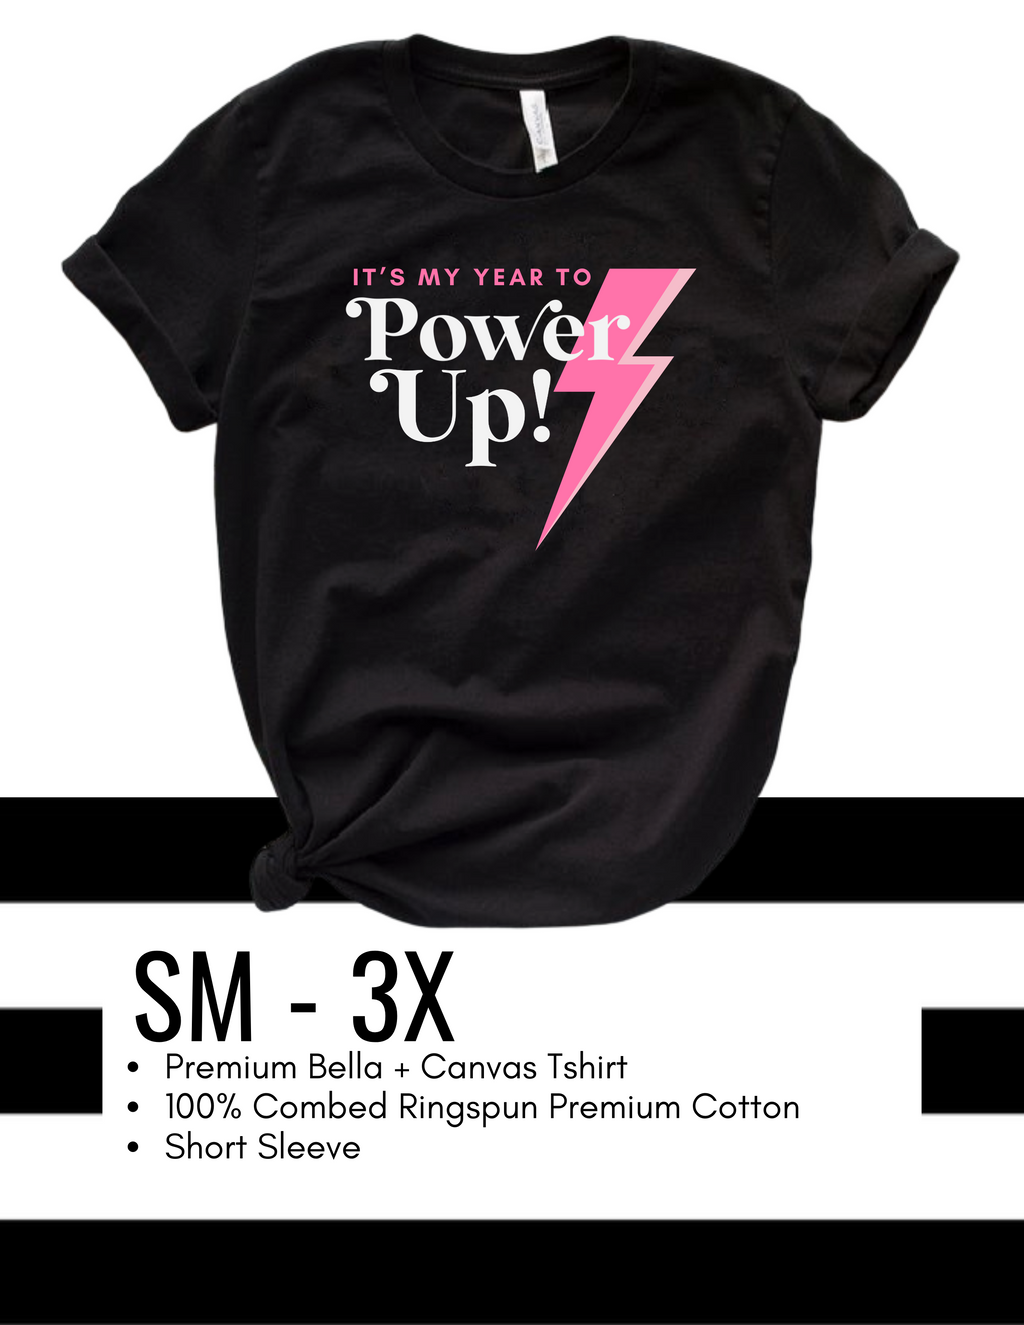 Power Up T-Shirt